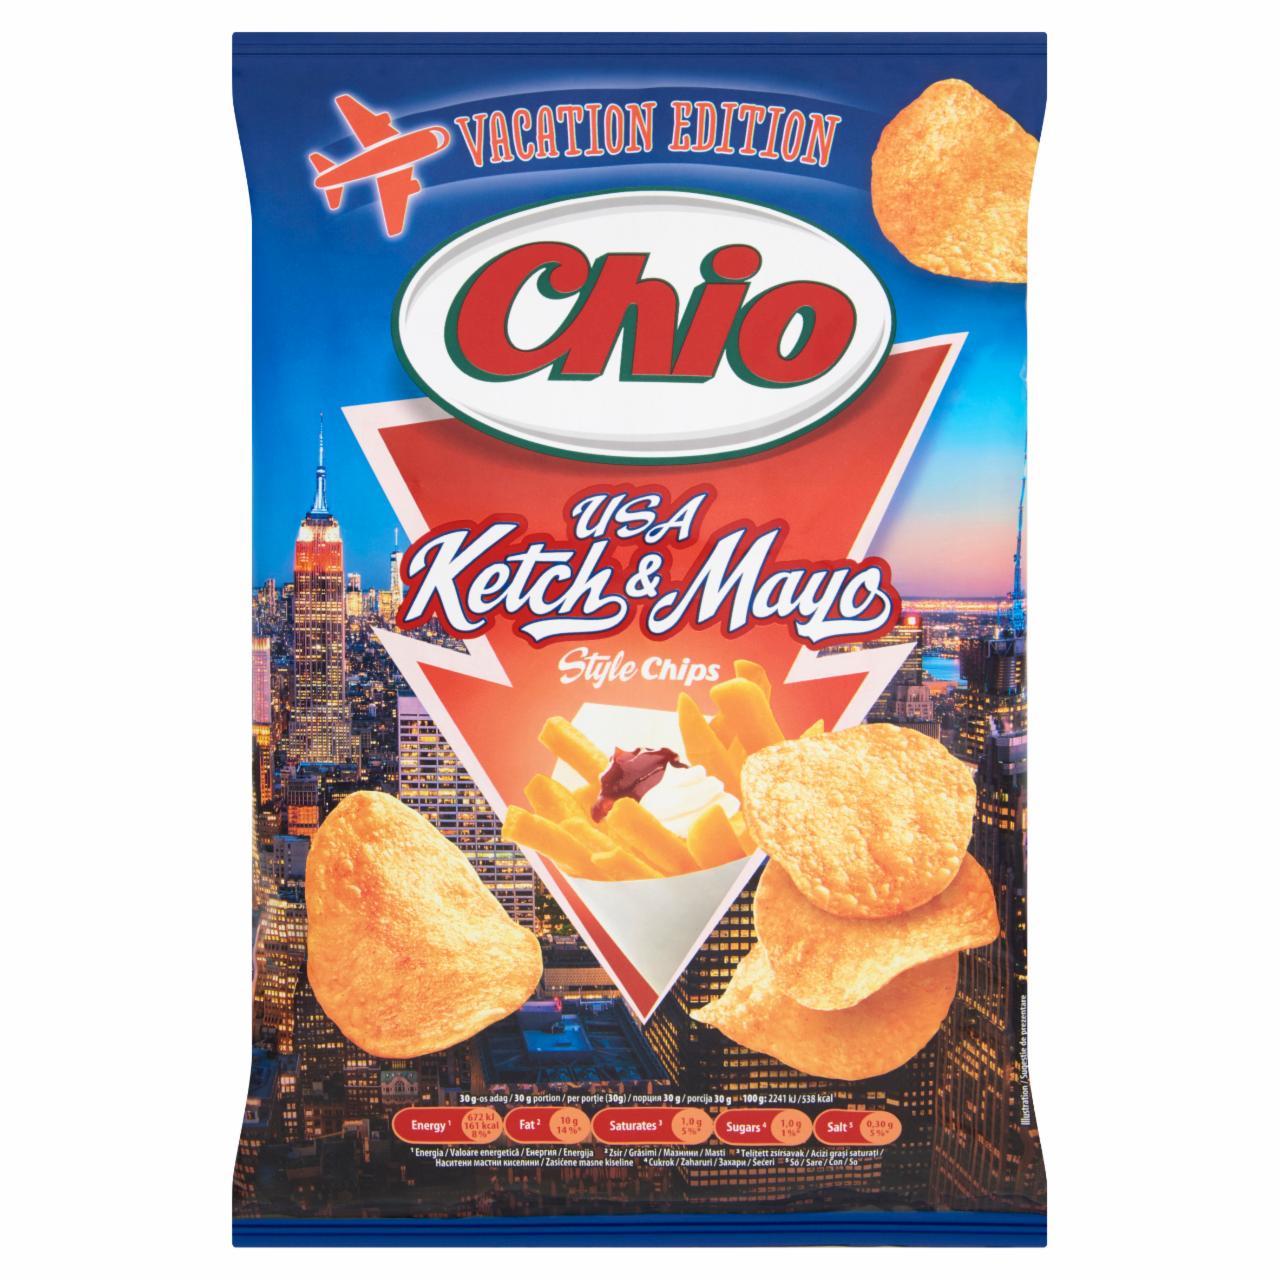 Képek - Chio USA Ketch & Mayo Style Chips ketchup és majonéz ízű burgonyachips 65 g